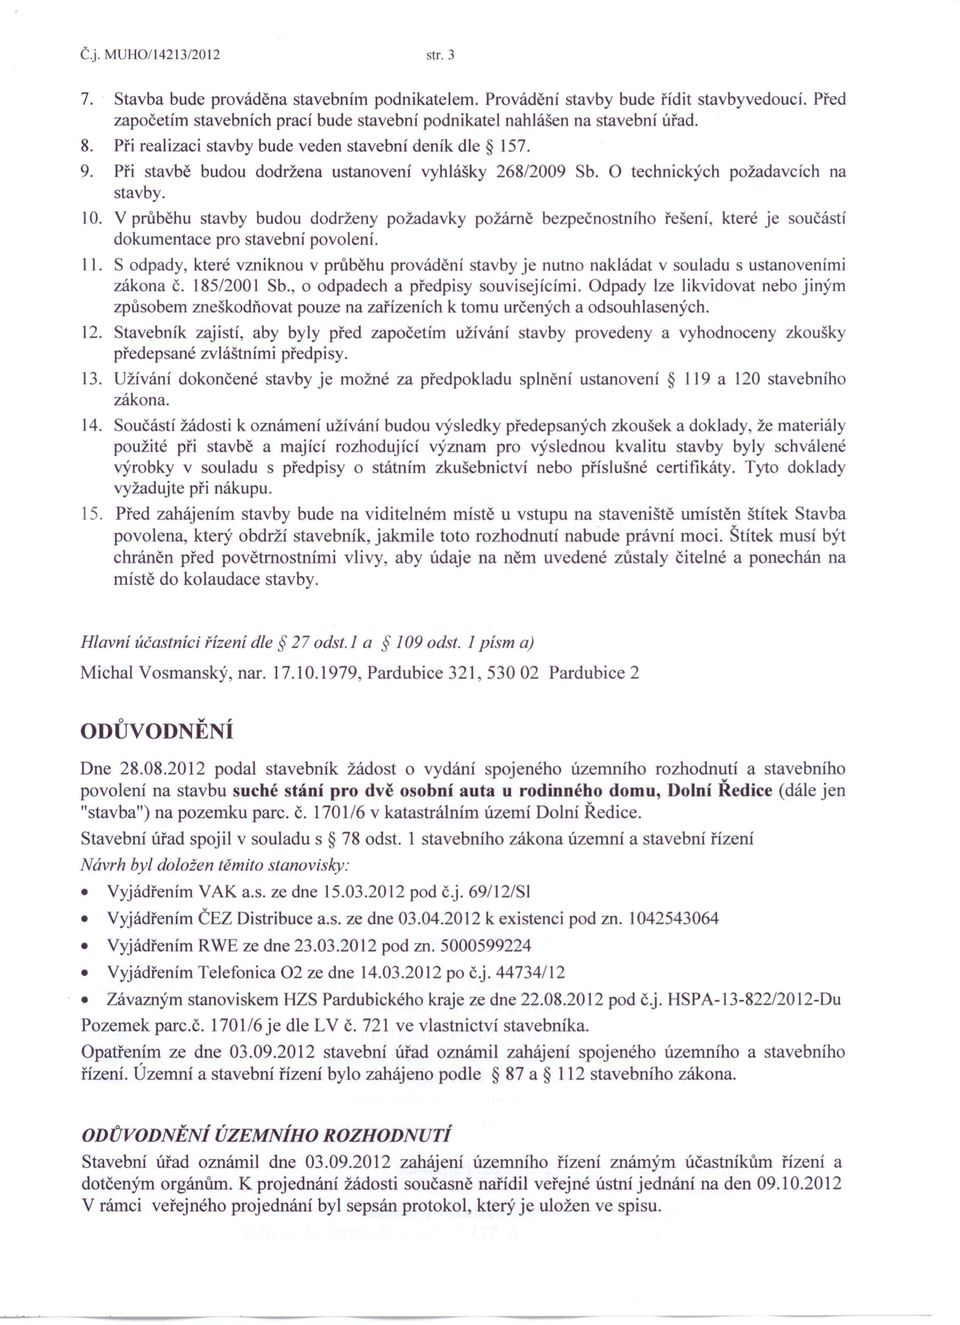 Při stavbě budou dodržena ustanovení vyhlášky 268/2009 Sb. O technických požadavcích na stavby. 10.